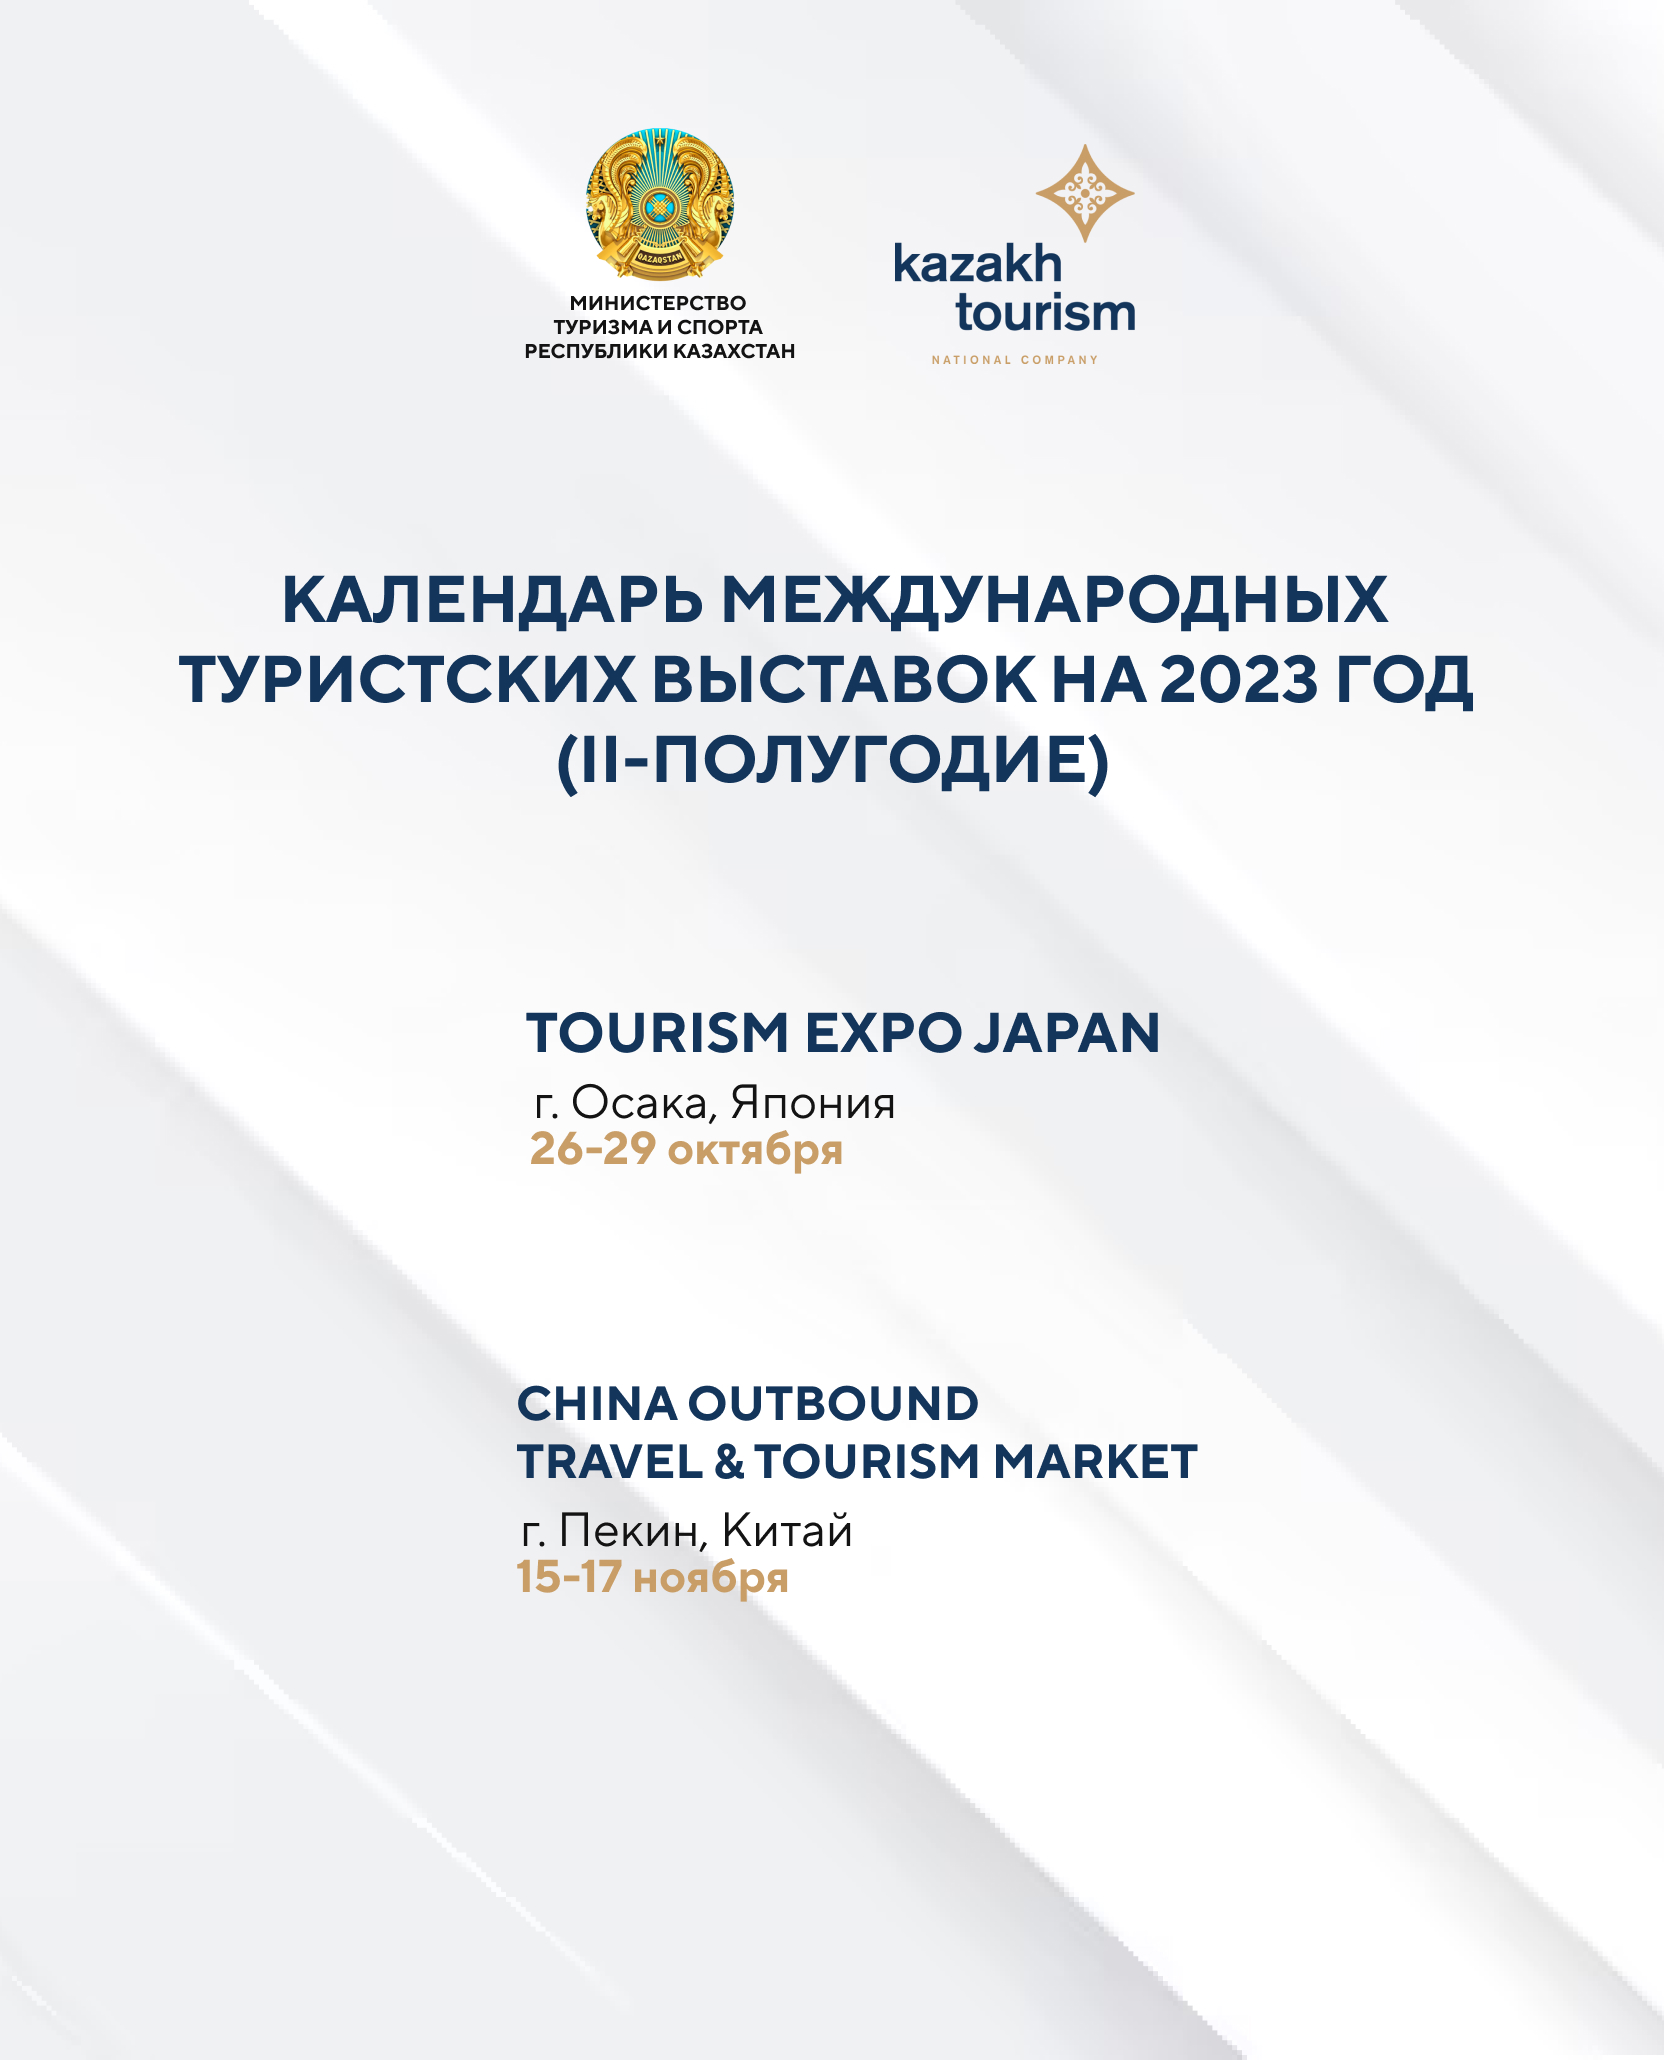 Открыта регистрация для турбизнеса на участие в выставках Tourism Expo Japan, China Outbound Travel & Tourism Market